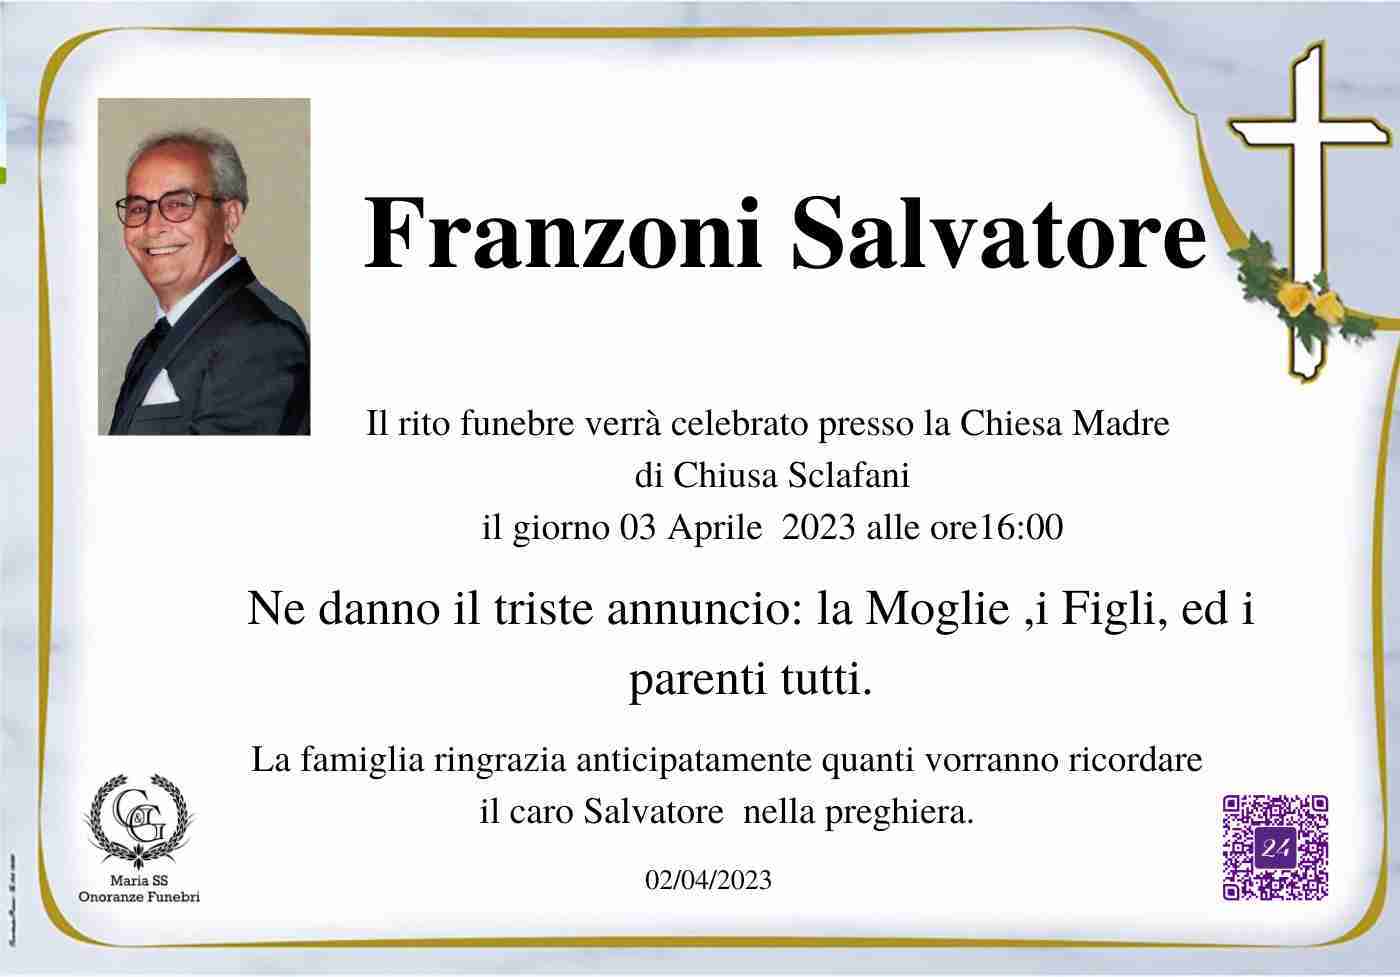 Salvatore Franzoni